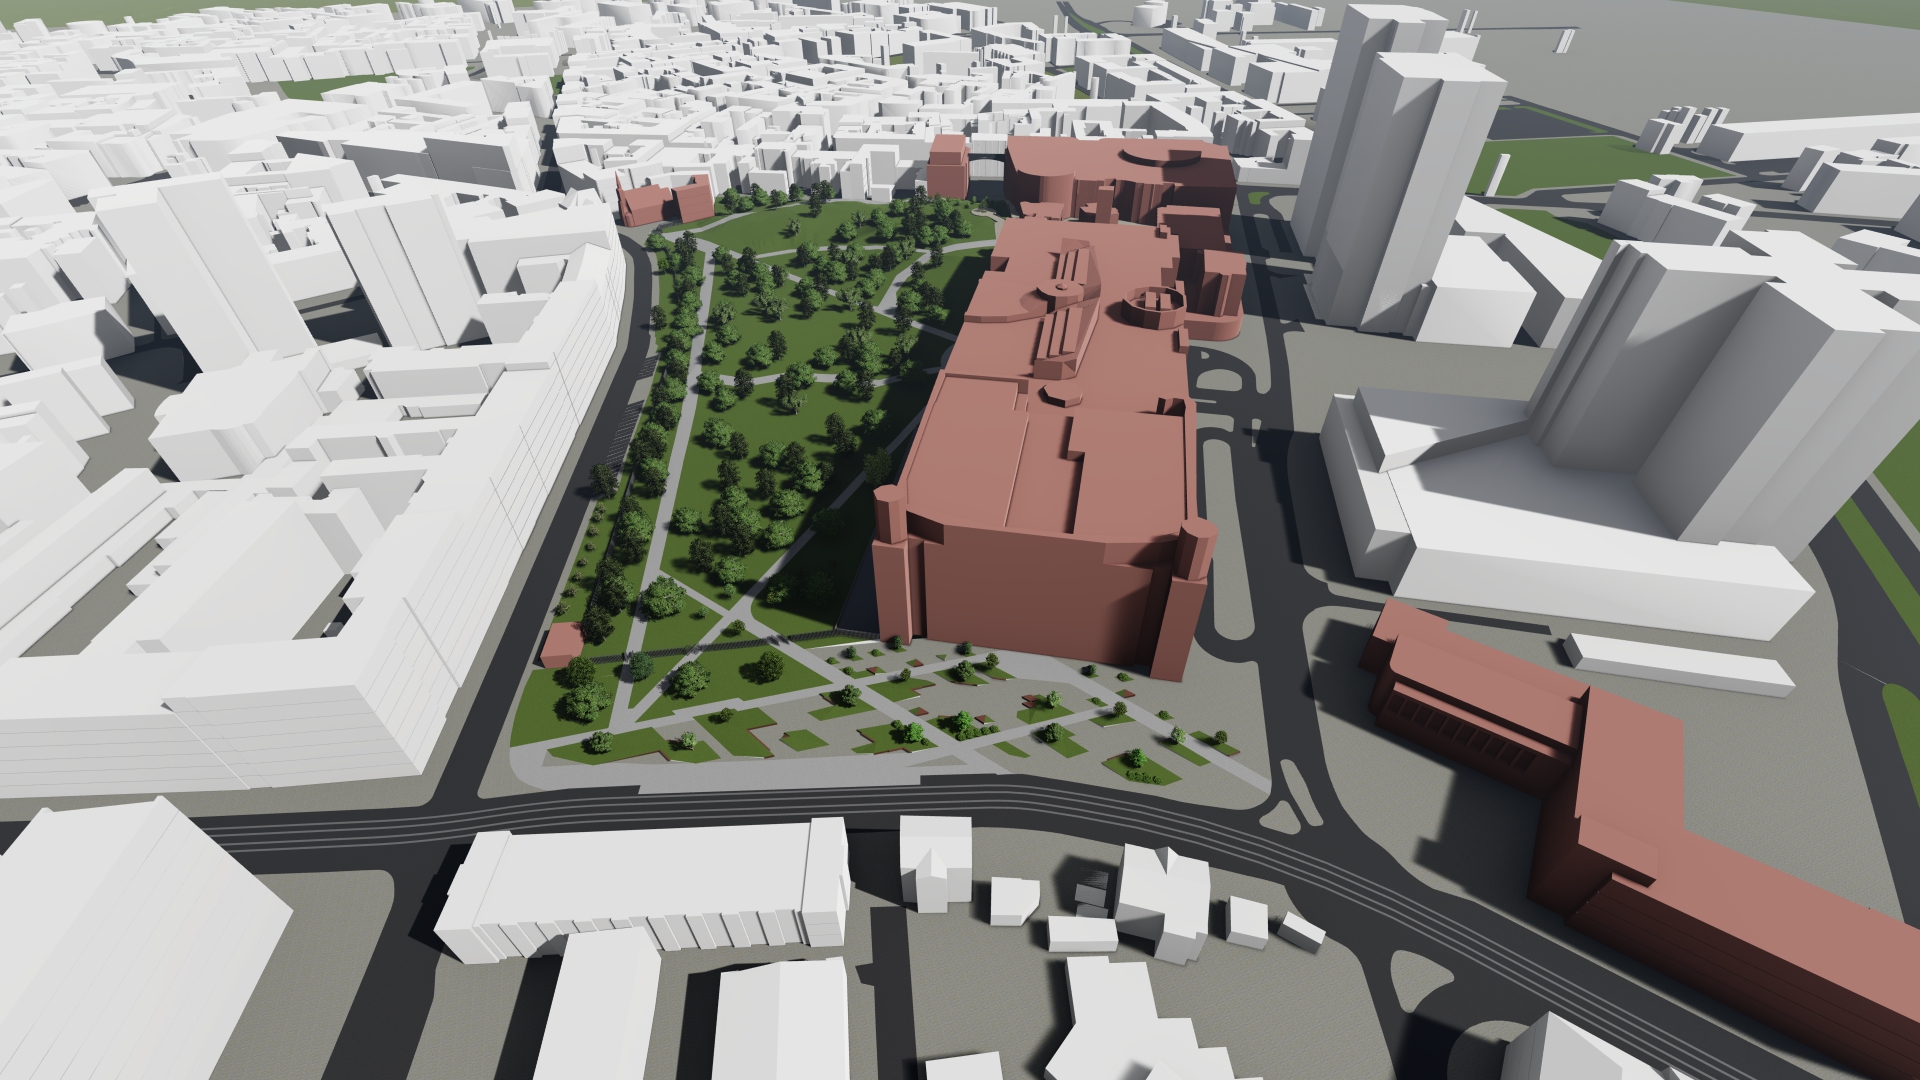 Wizualizacja. Propozycja zagospodarowania terenu wg projektu planu miejscowego. Model budynku Starego Browaru oraz parku przy nim zlokalizowanego.